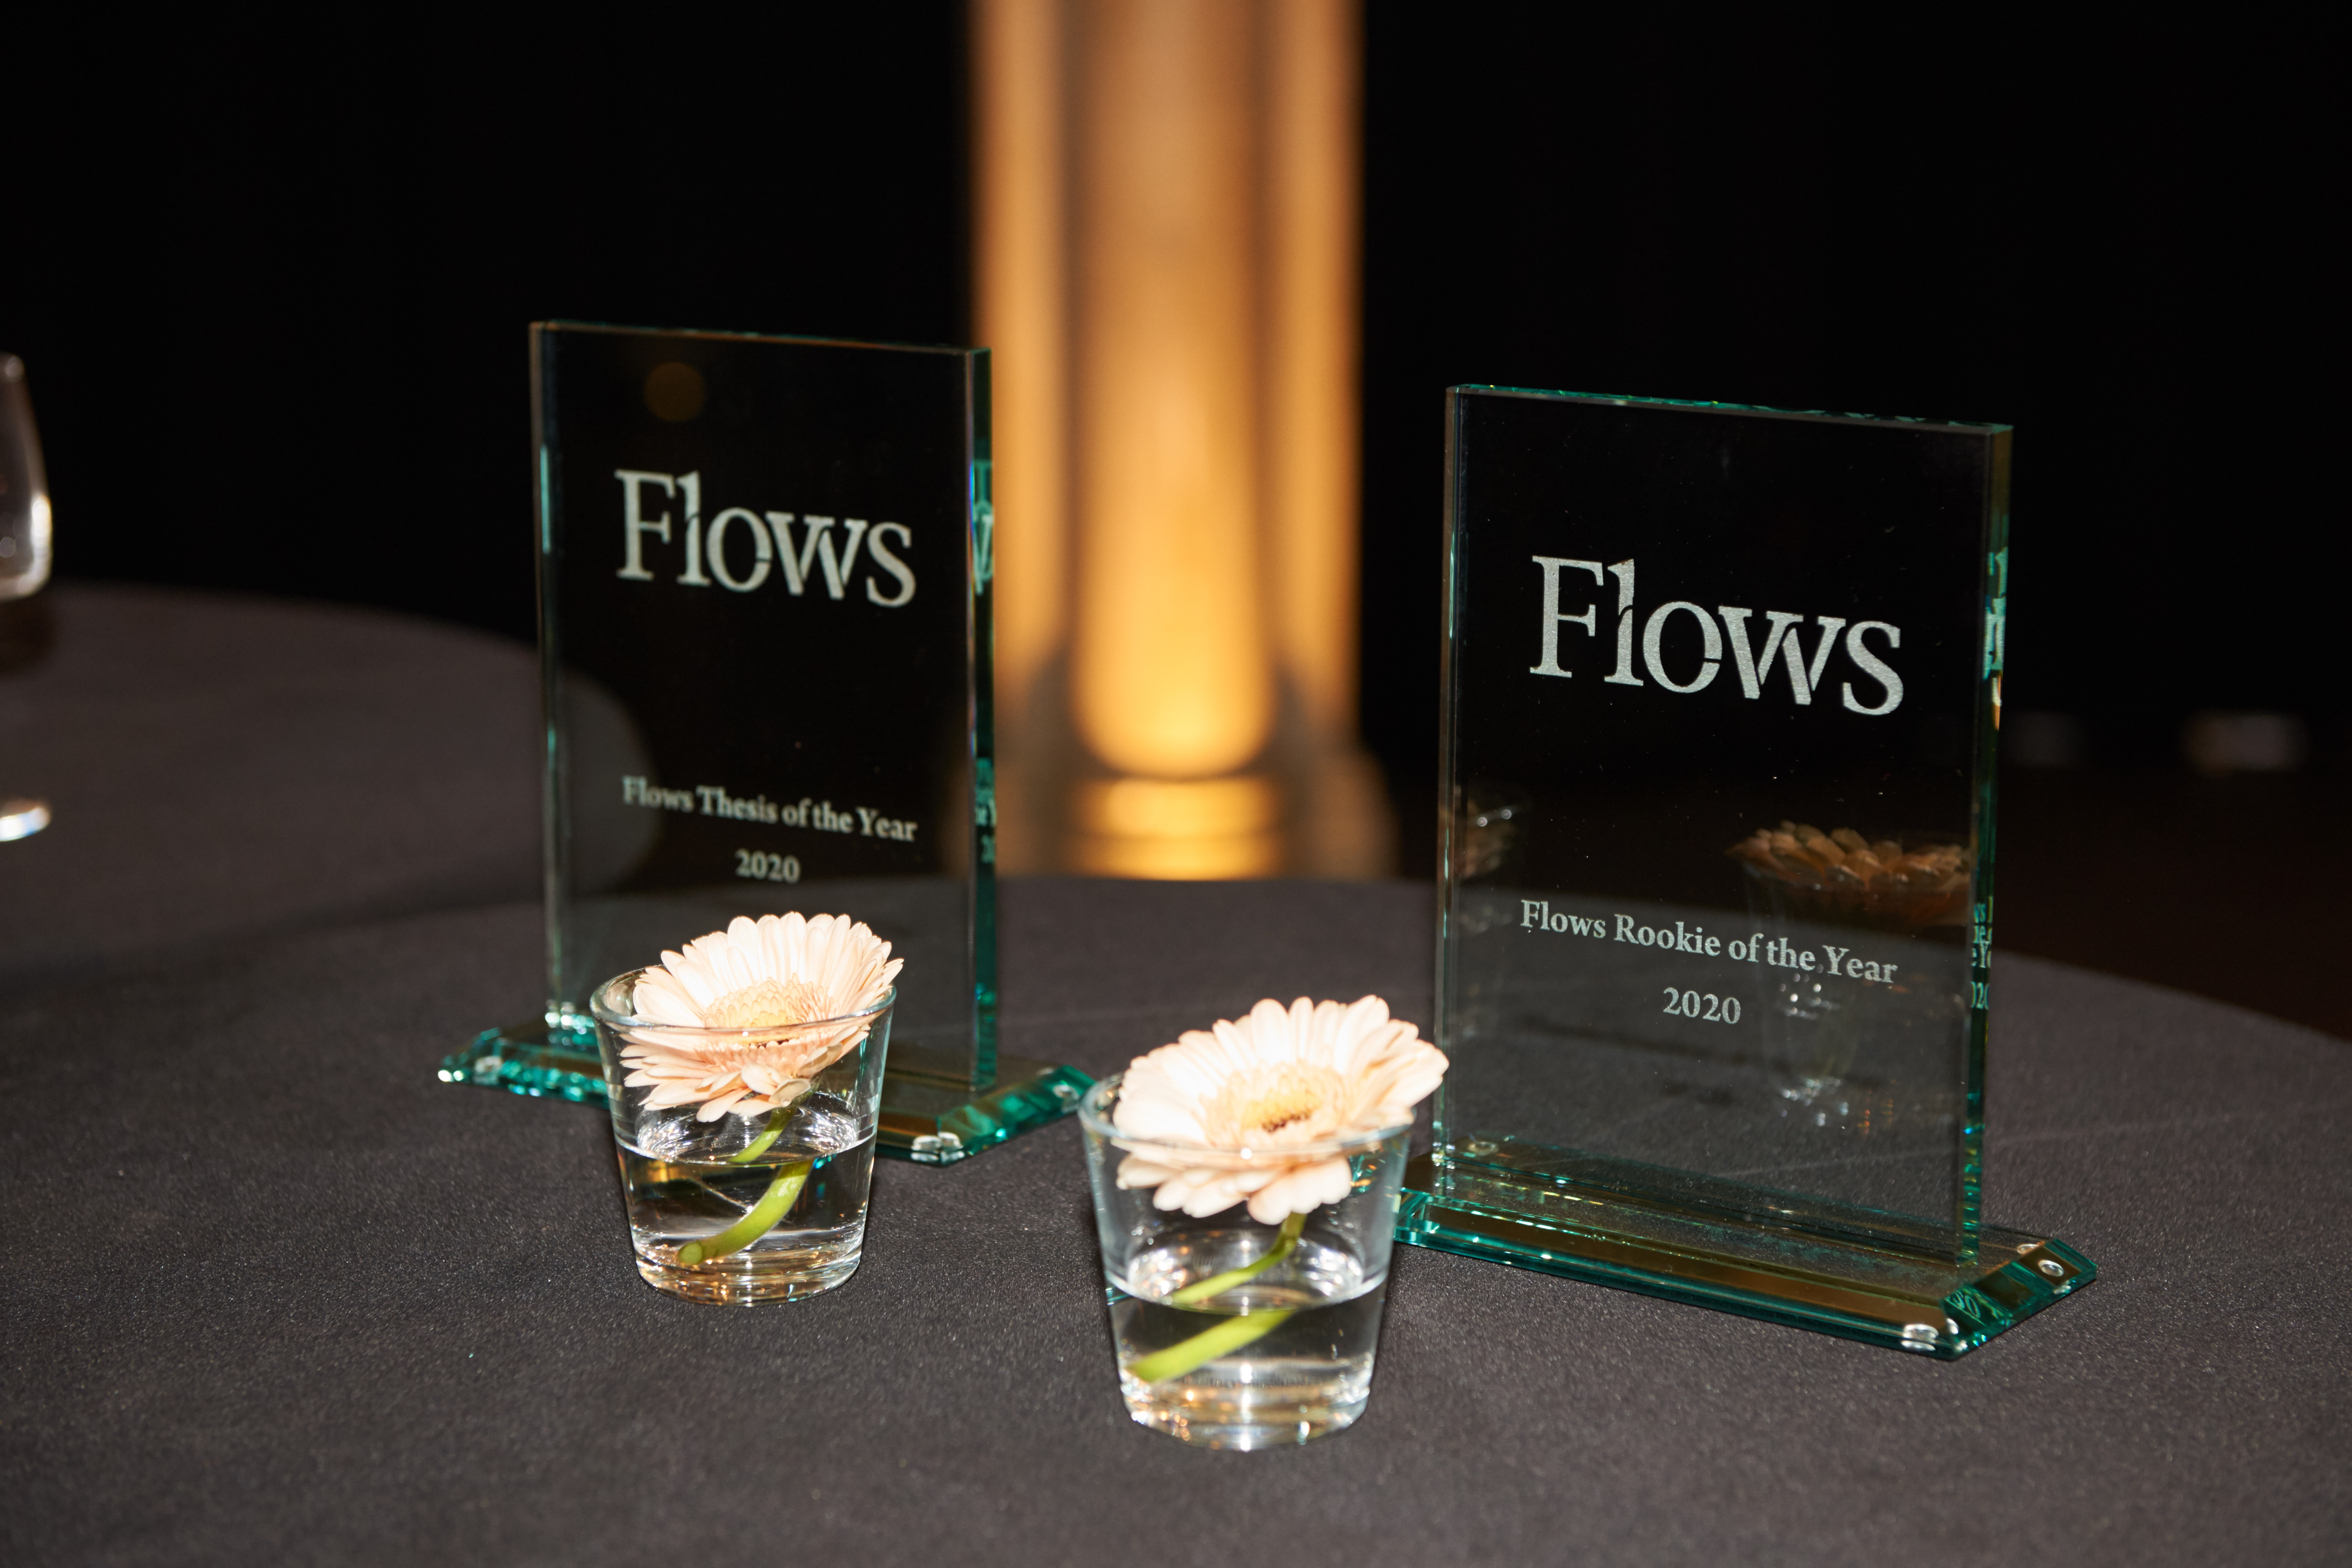 Flows Awards 2020